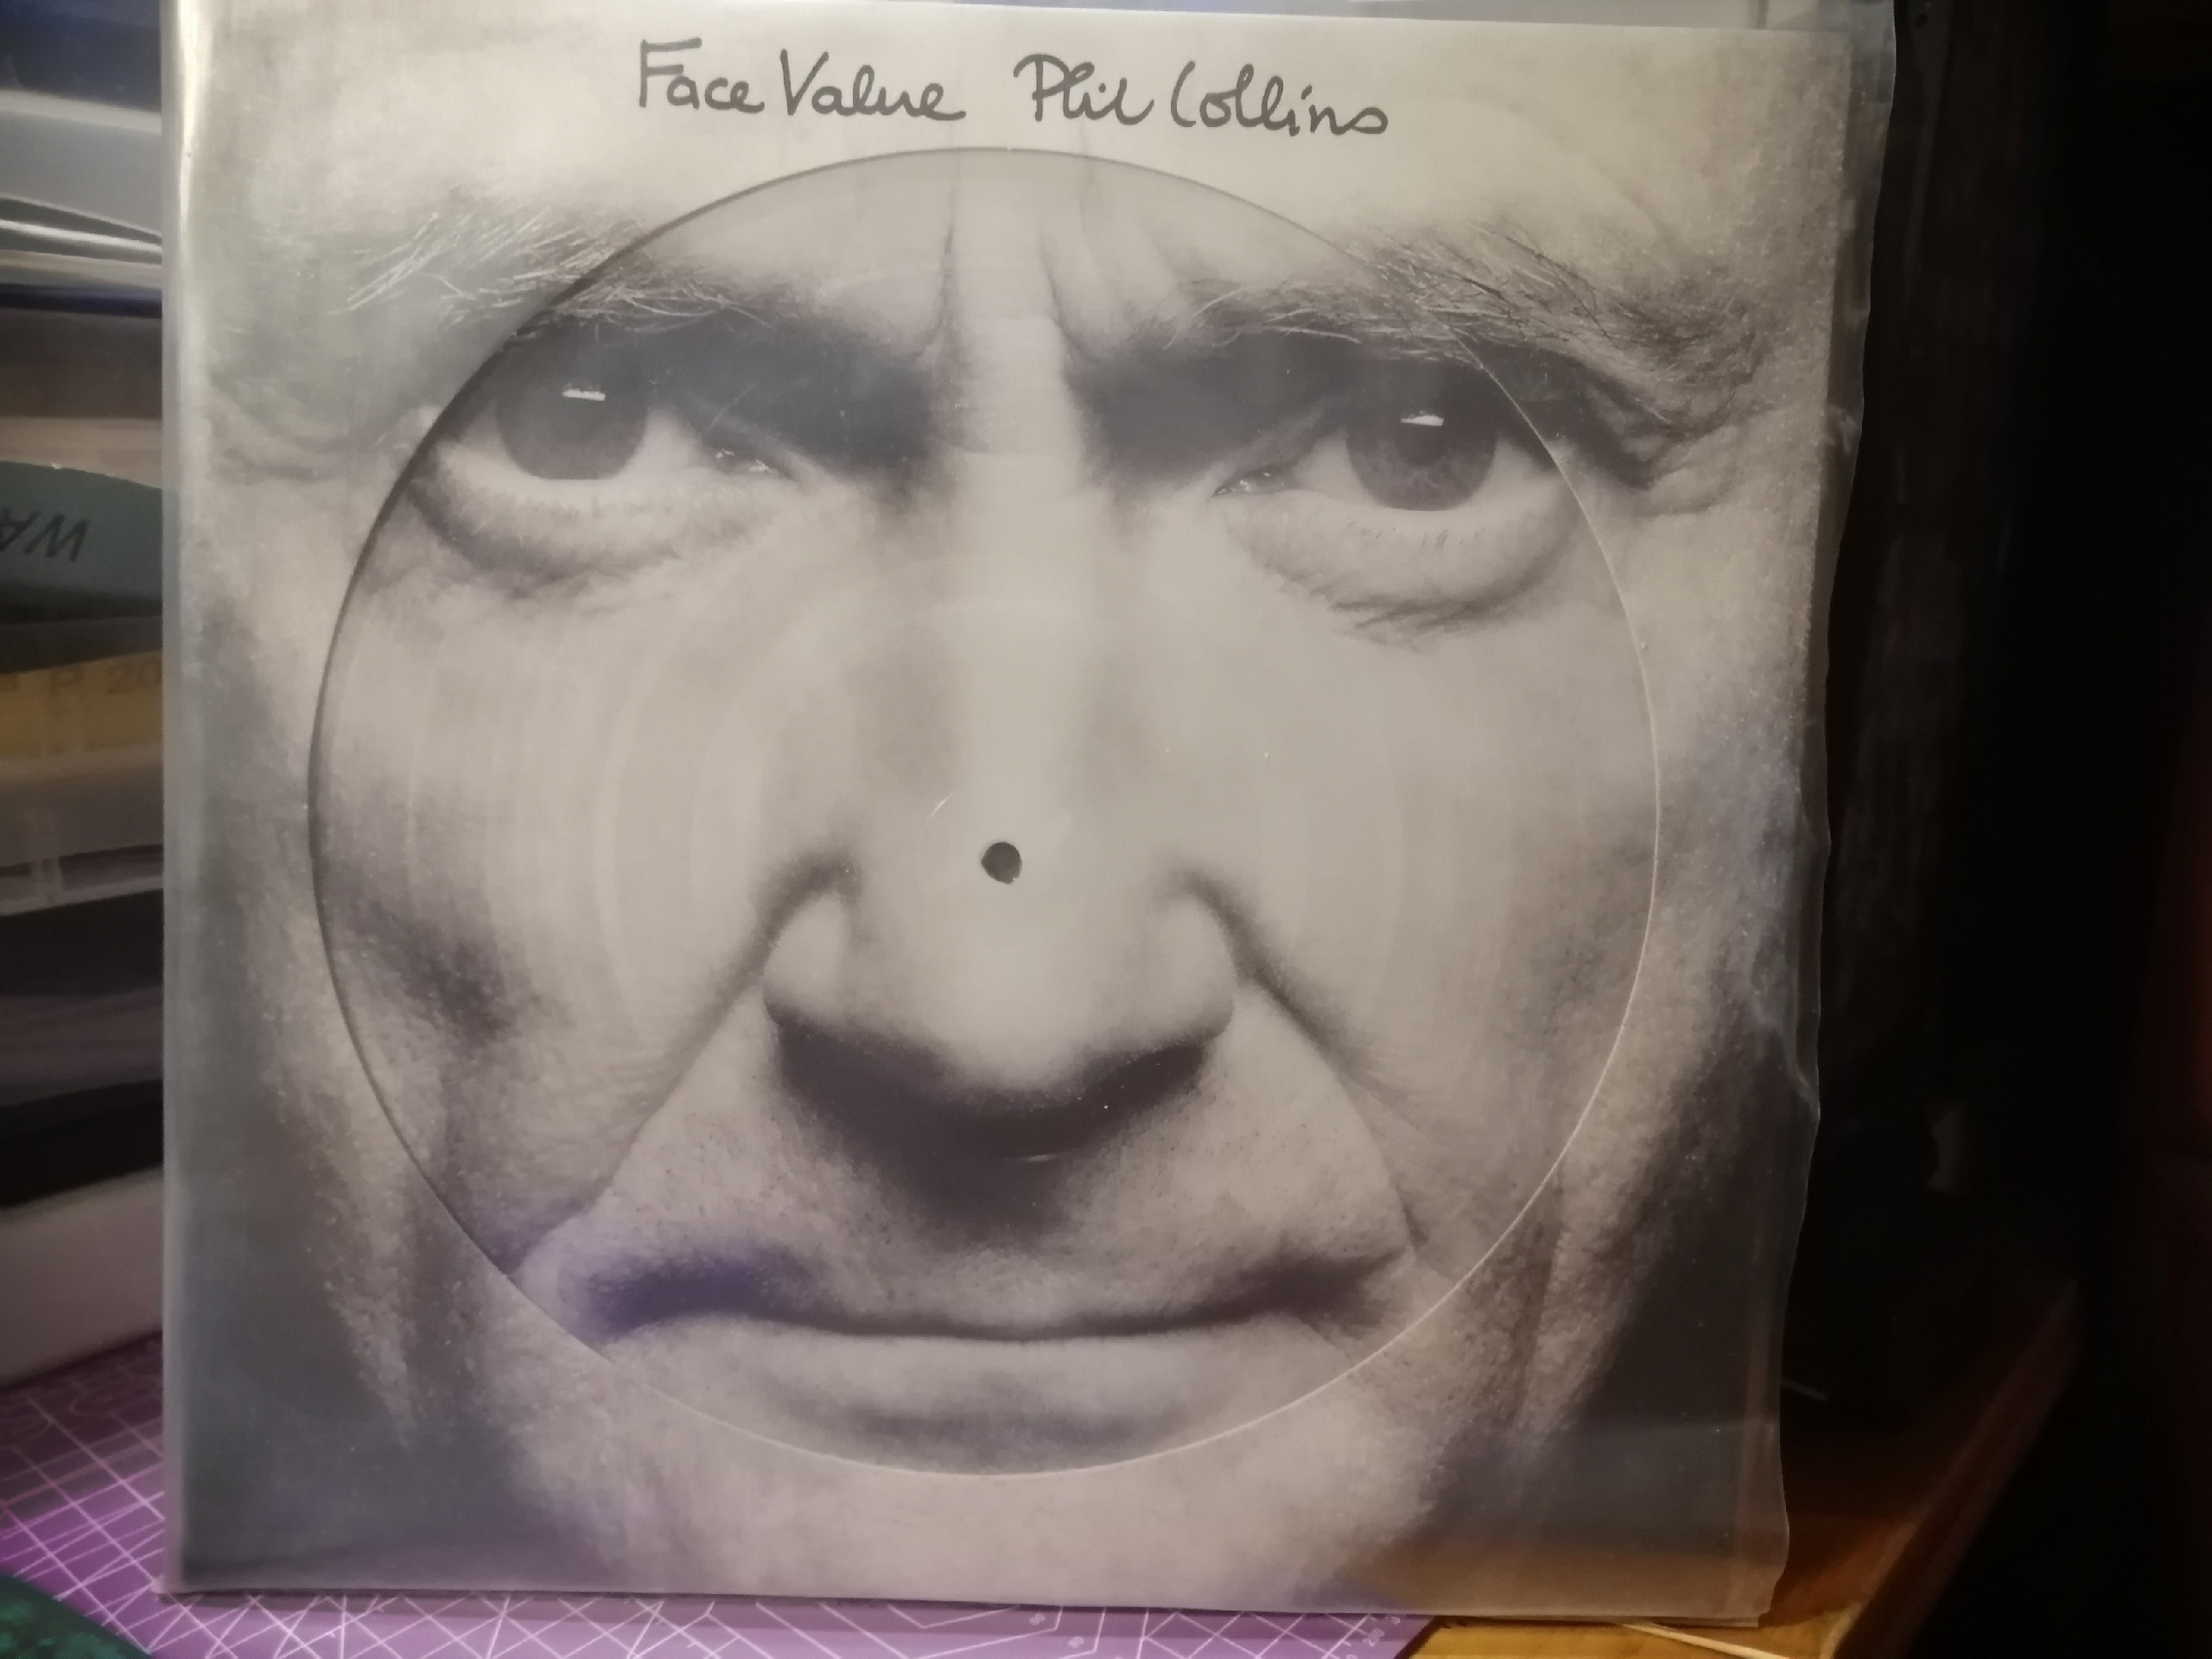 Face Value из коллекции Алексея — это переиздание дебютного студийного альбома Фила Коллинза 1981 года. Ремастер альбома сделан в 2015 году